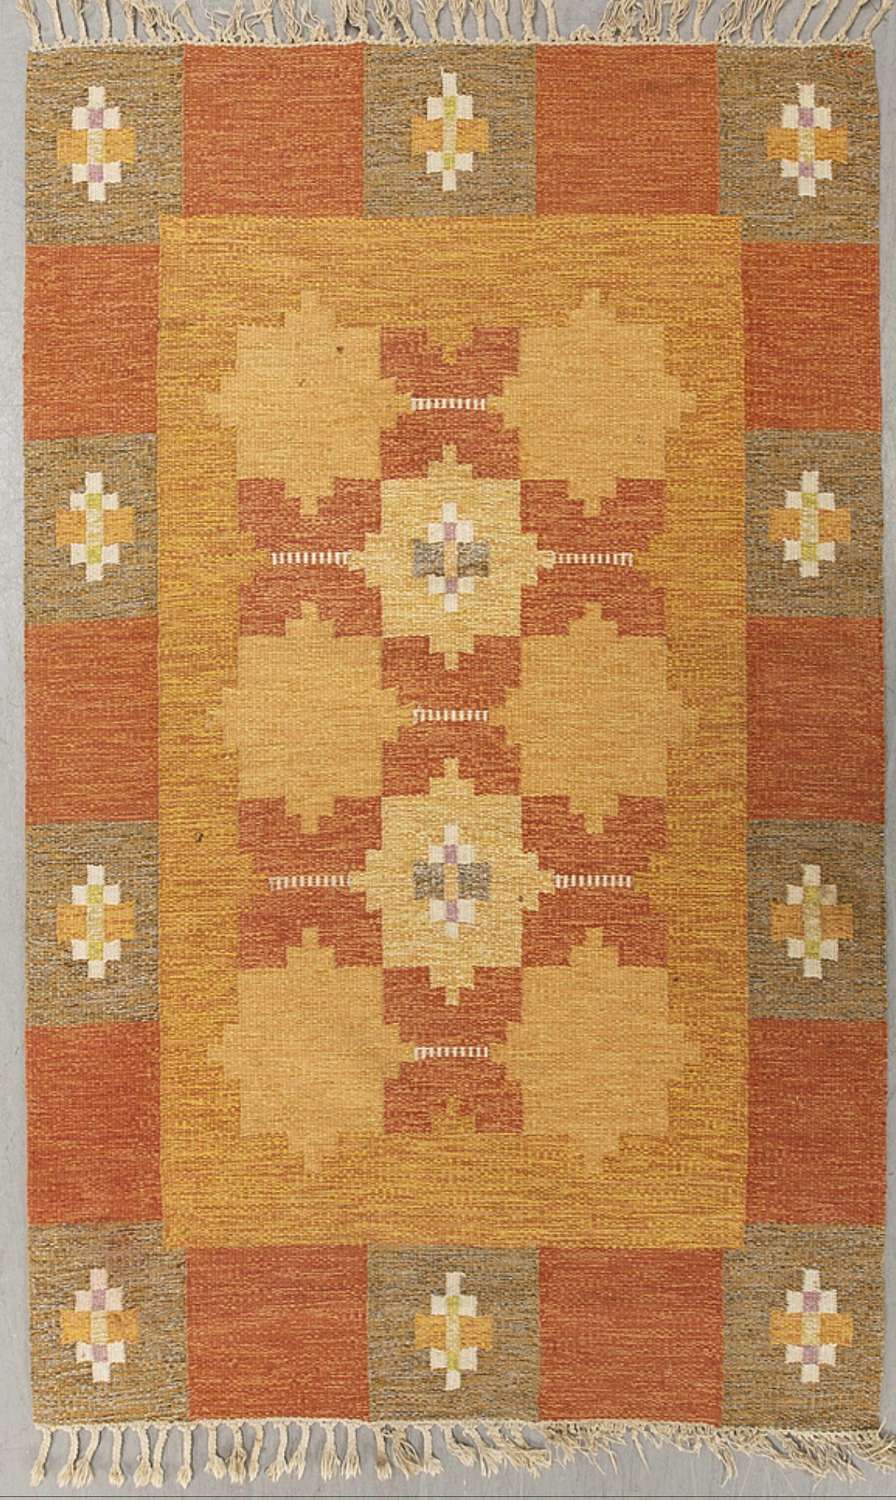 1960s Swedish flat weave rug by Ingegerd Silow